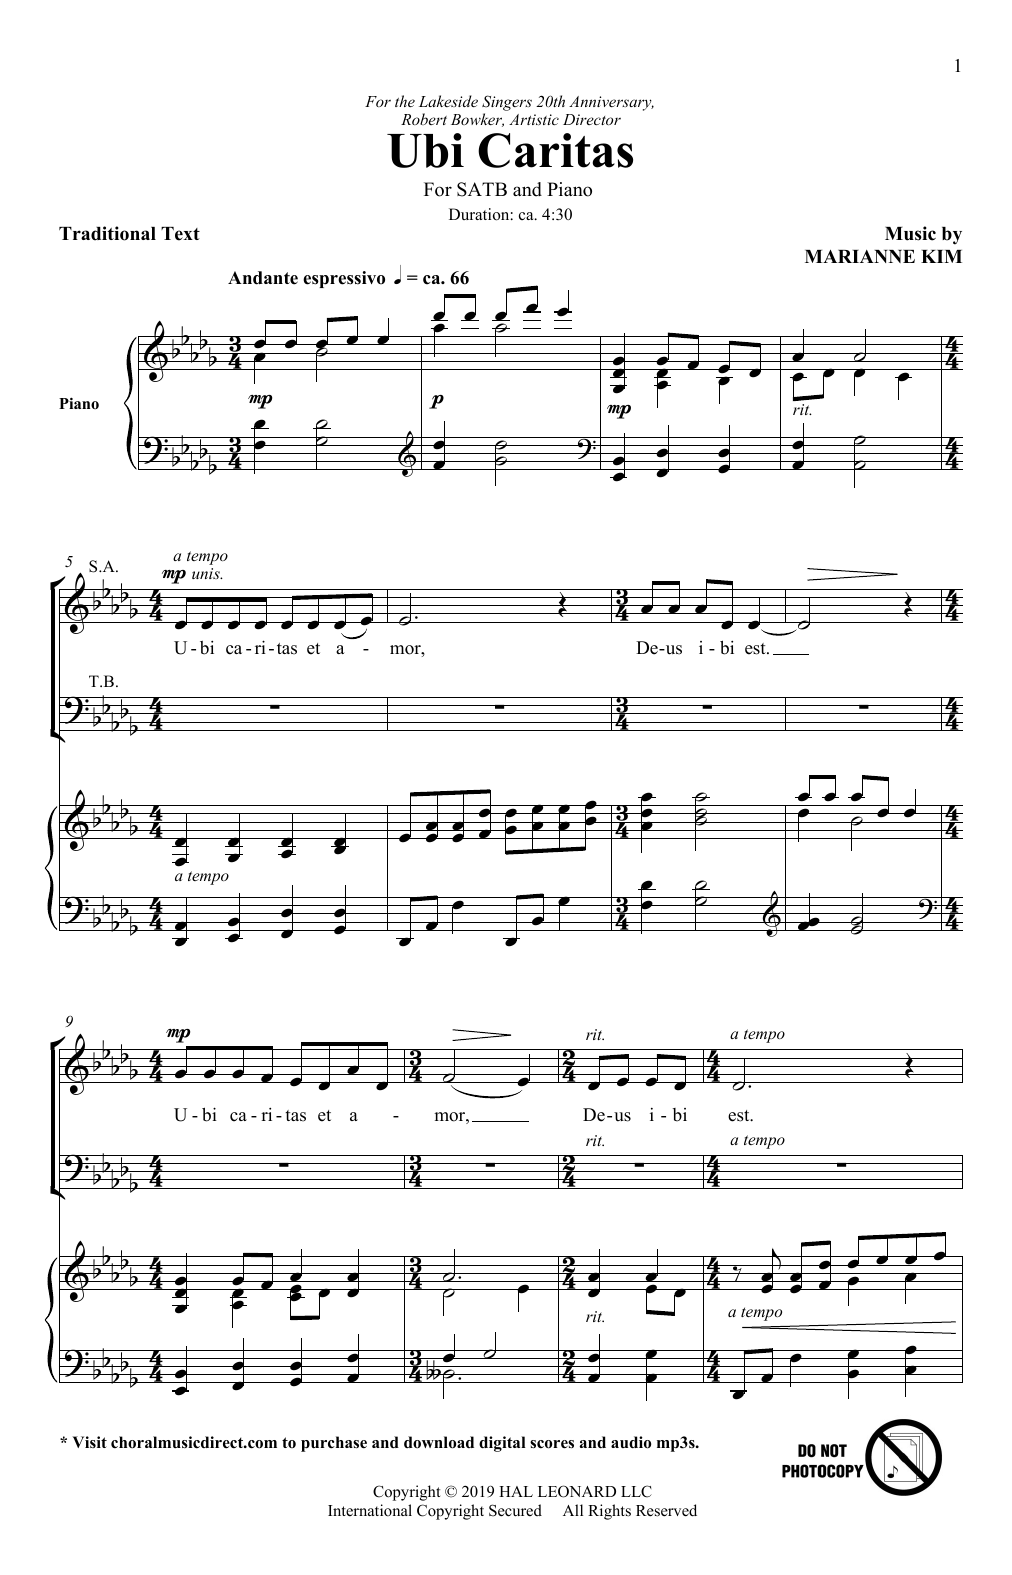 Marianne Kim Ubi Caritas Sheet Music Notes & Chords for SATB Choir - Download or Print PDF